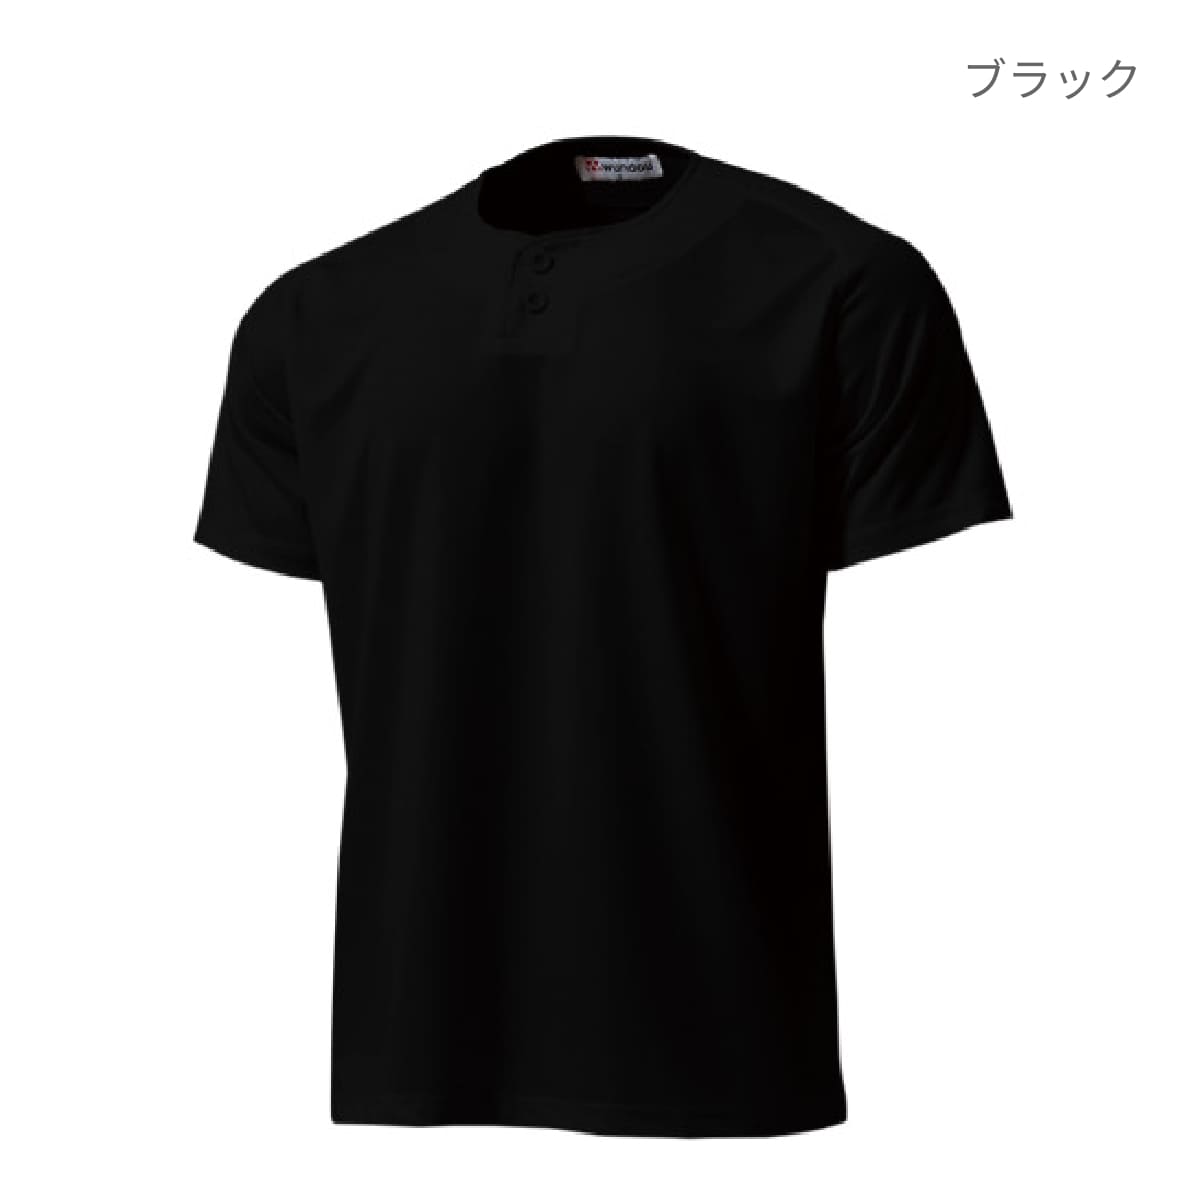 【送料無料】セミオープンベースボールシャツ | ユニフォーム | 1枚 | P2710 | ロイヤルブルー